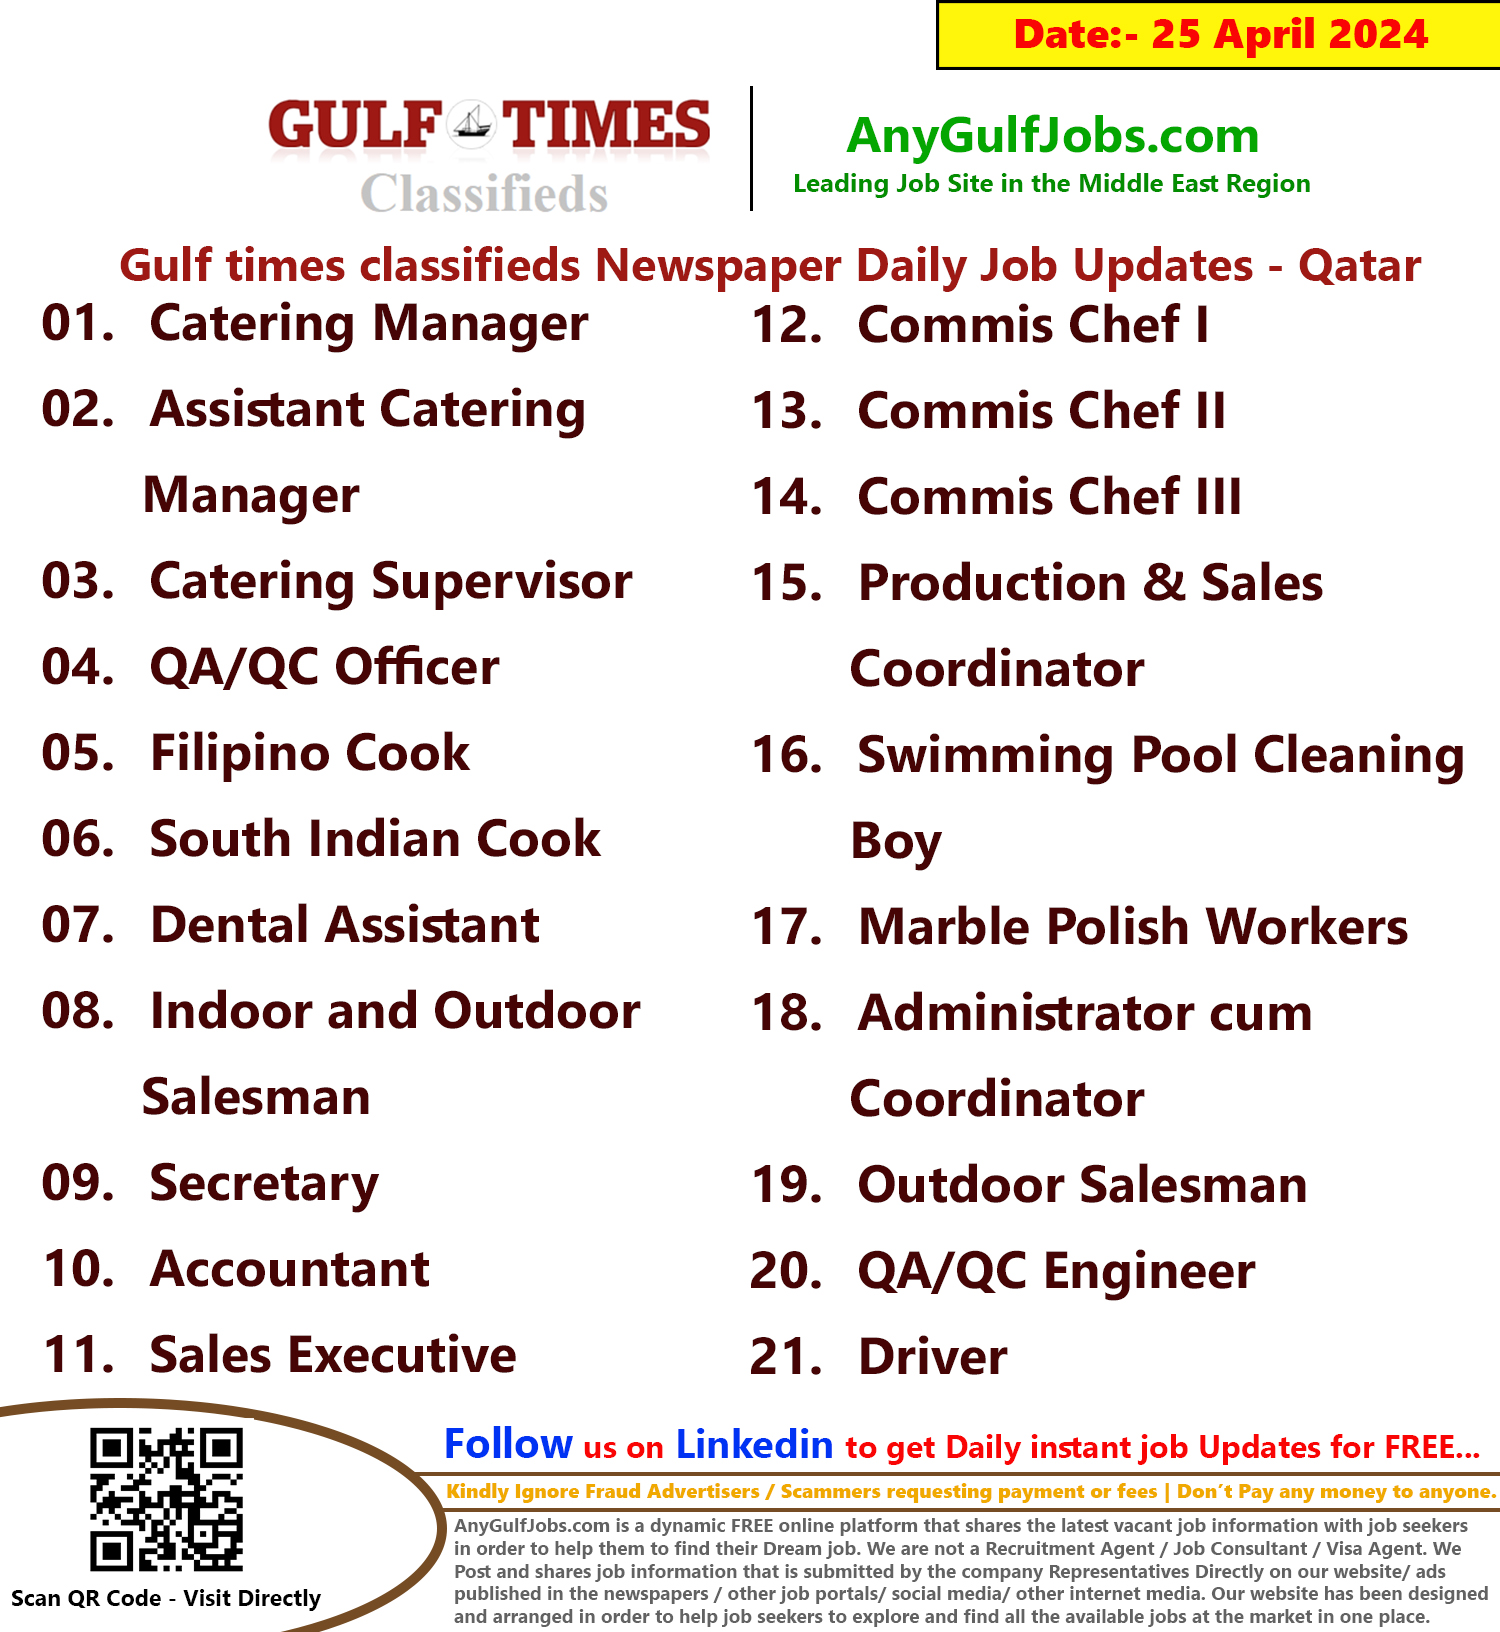 Gulf Times Classifieds Job Vacancies Qatar - 25 April 2024